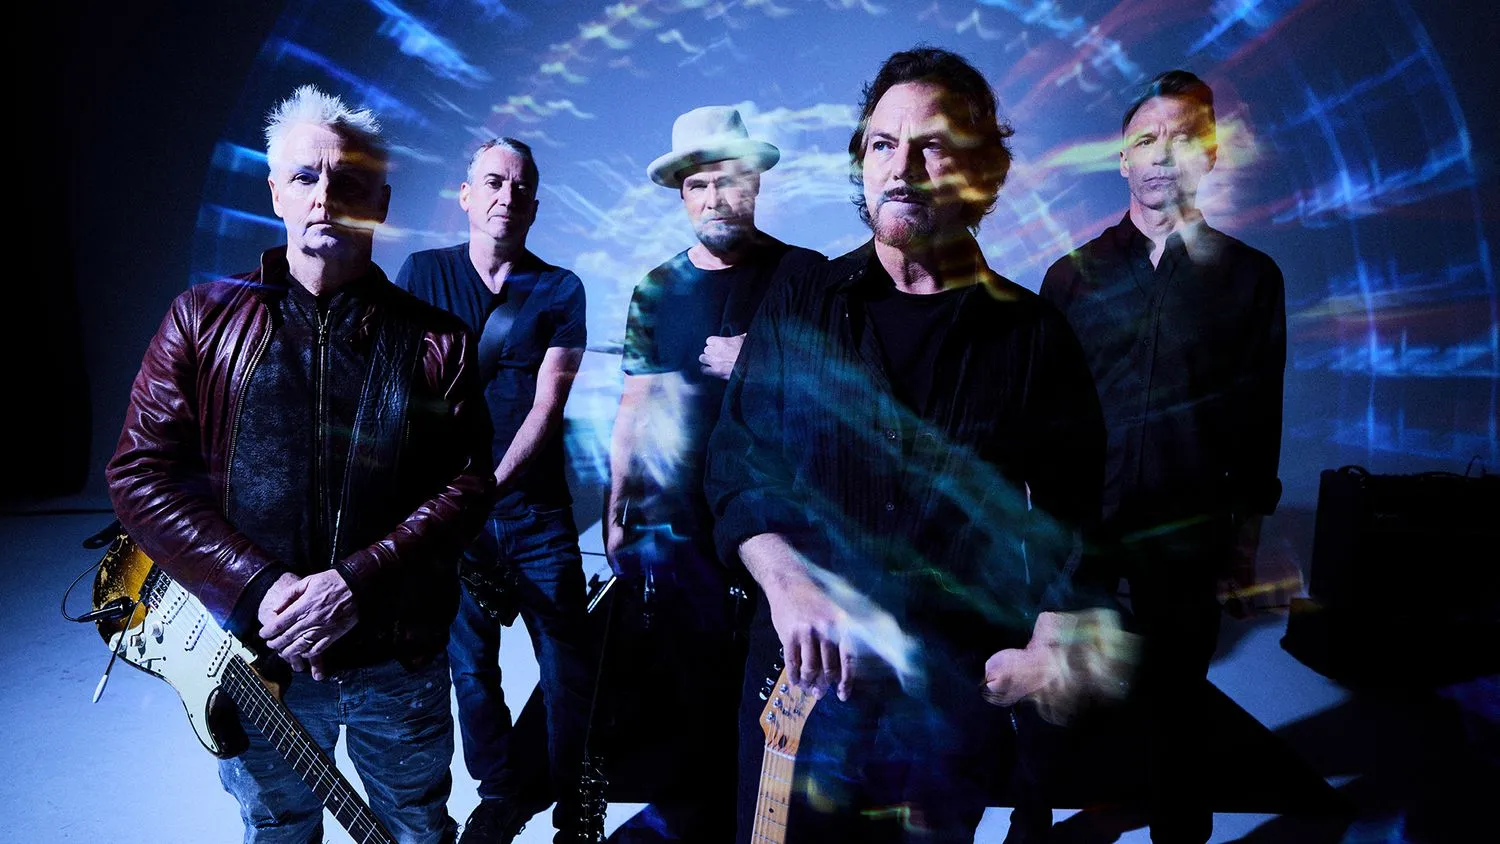 Mehr über den Artikel erfahren Pearl Jam’s kosmisch aufgeladene Rock-Reise geht mit dem neuen Album ‚Dark Matter‘ weiter – Hört euch die erste Single an